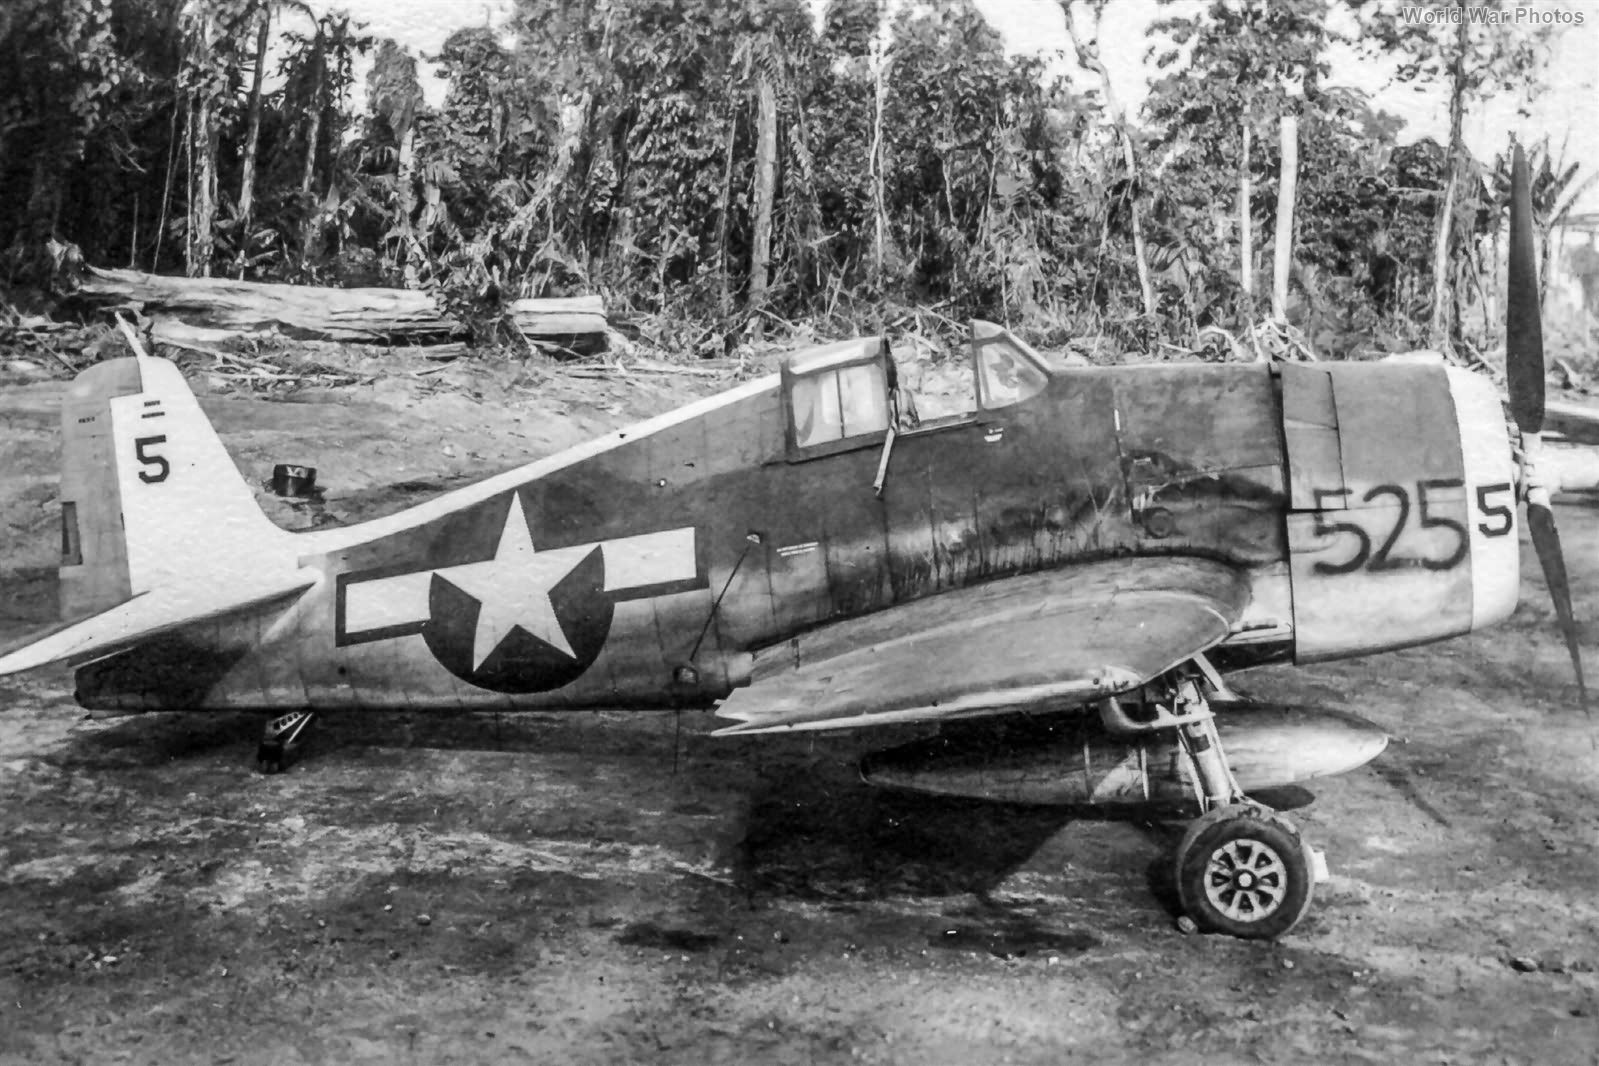 Grumman F6F-3 Hellcat Solomon Islands in late 1943